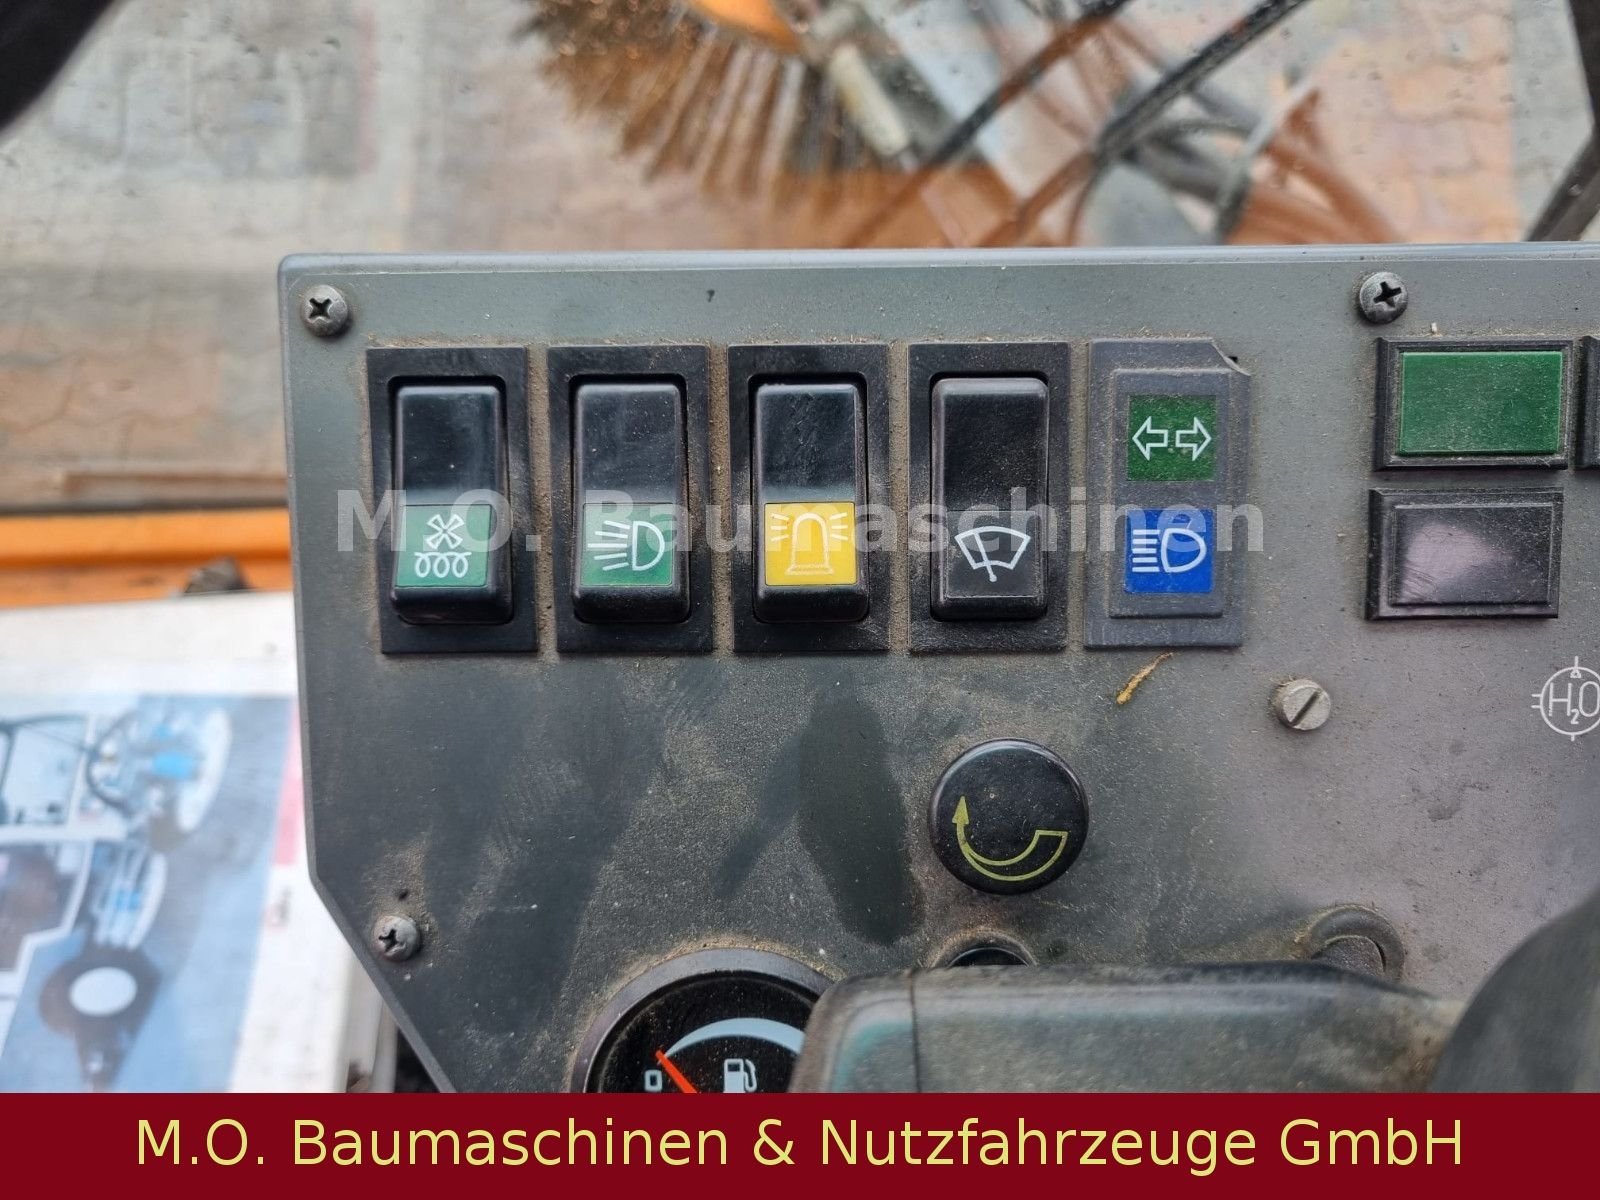 Fahrzeugabbildung Schmidt AEBI Bougie MFH 2200 / Kehrmaschine /